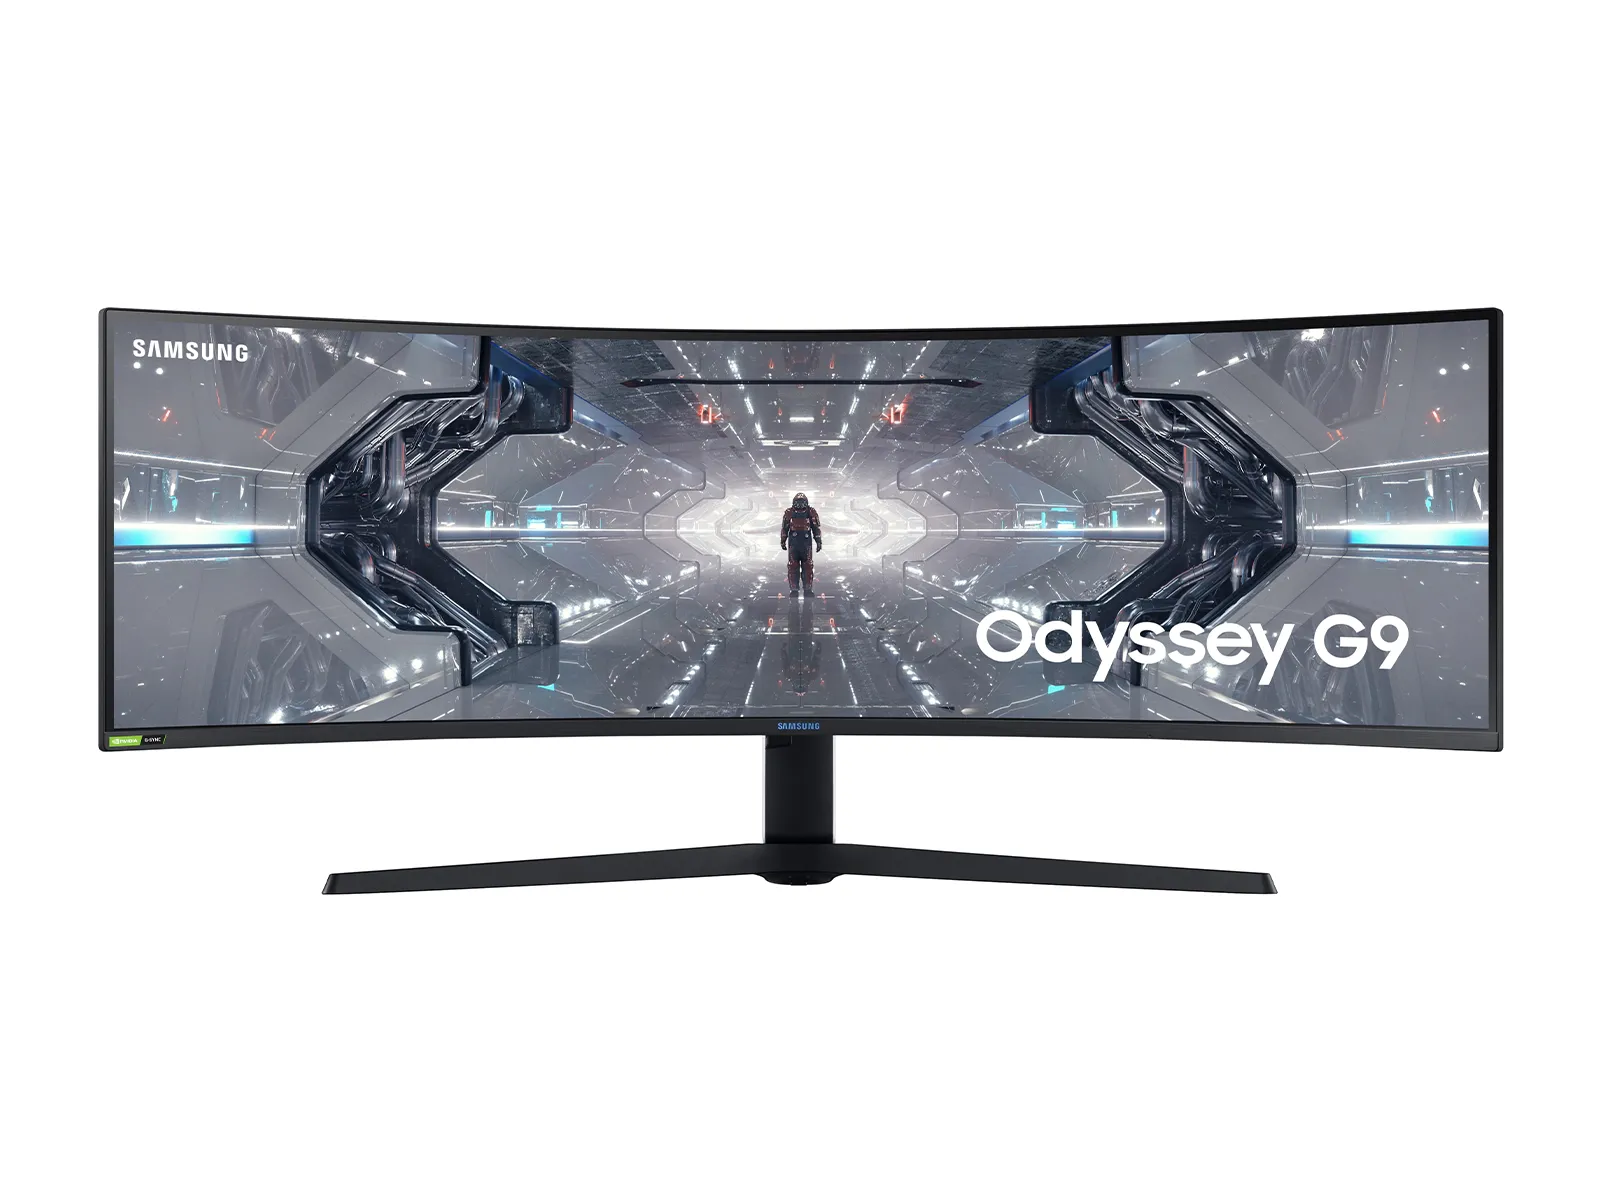 Sparen Sie an diesem Black Friday viel Geld bei einem riesigen Samsung Odyssey Gaming-Monitor